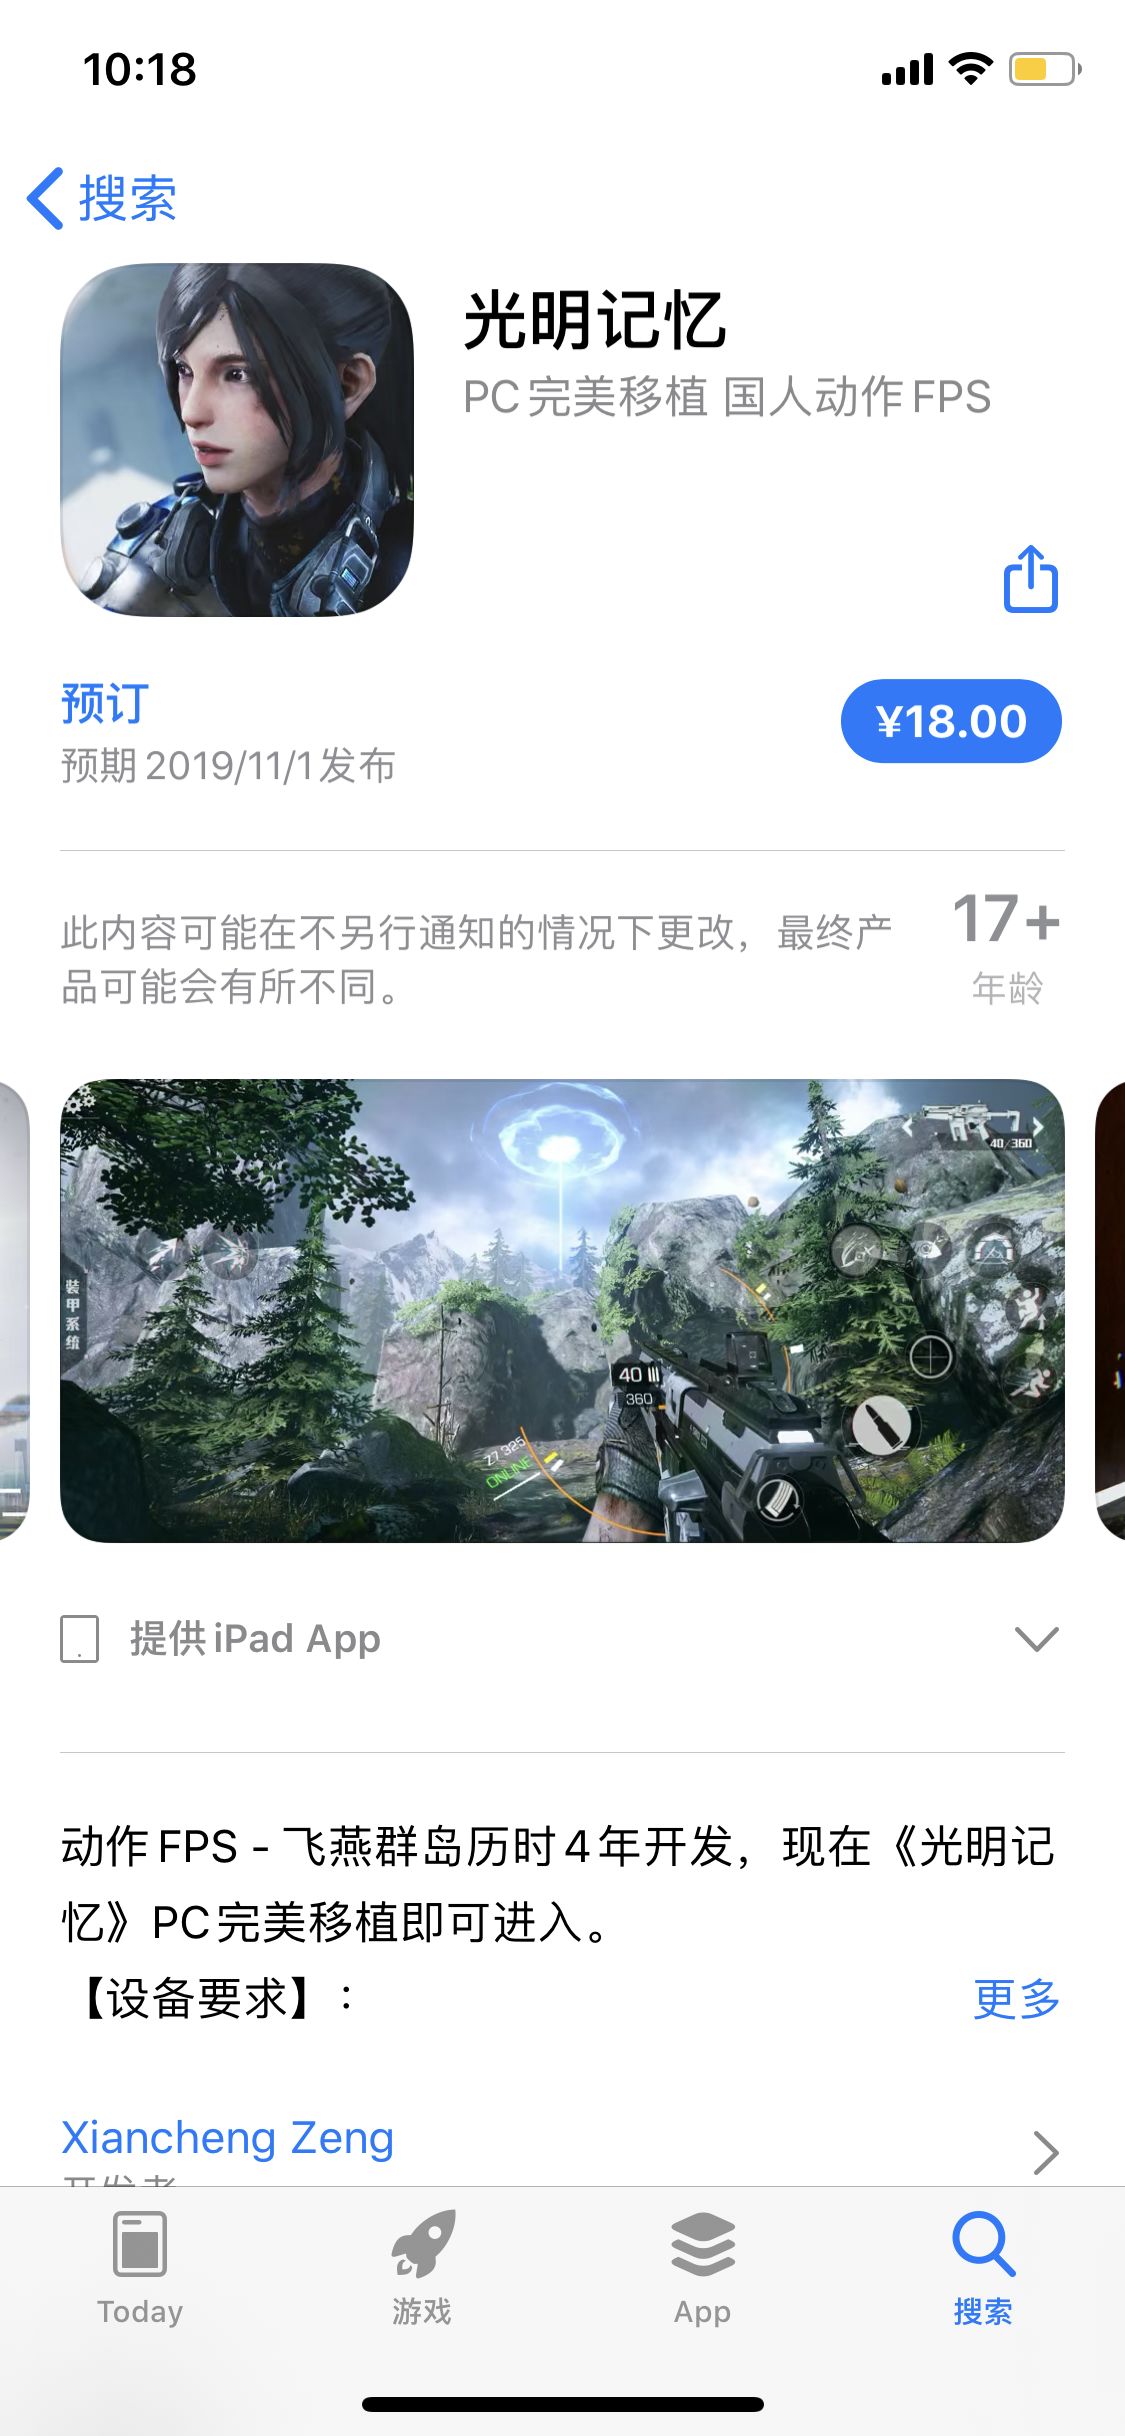 國產FPS《光明記憶》手遊iOS開啟預購 7折優惠售價18元